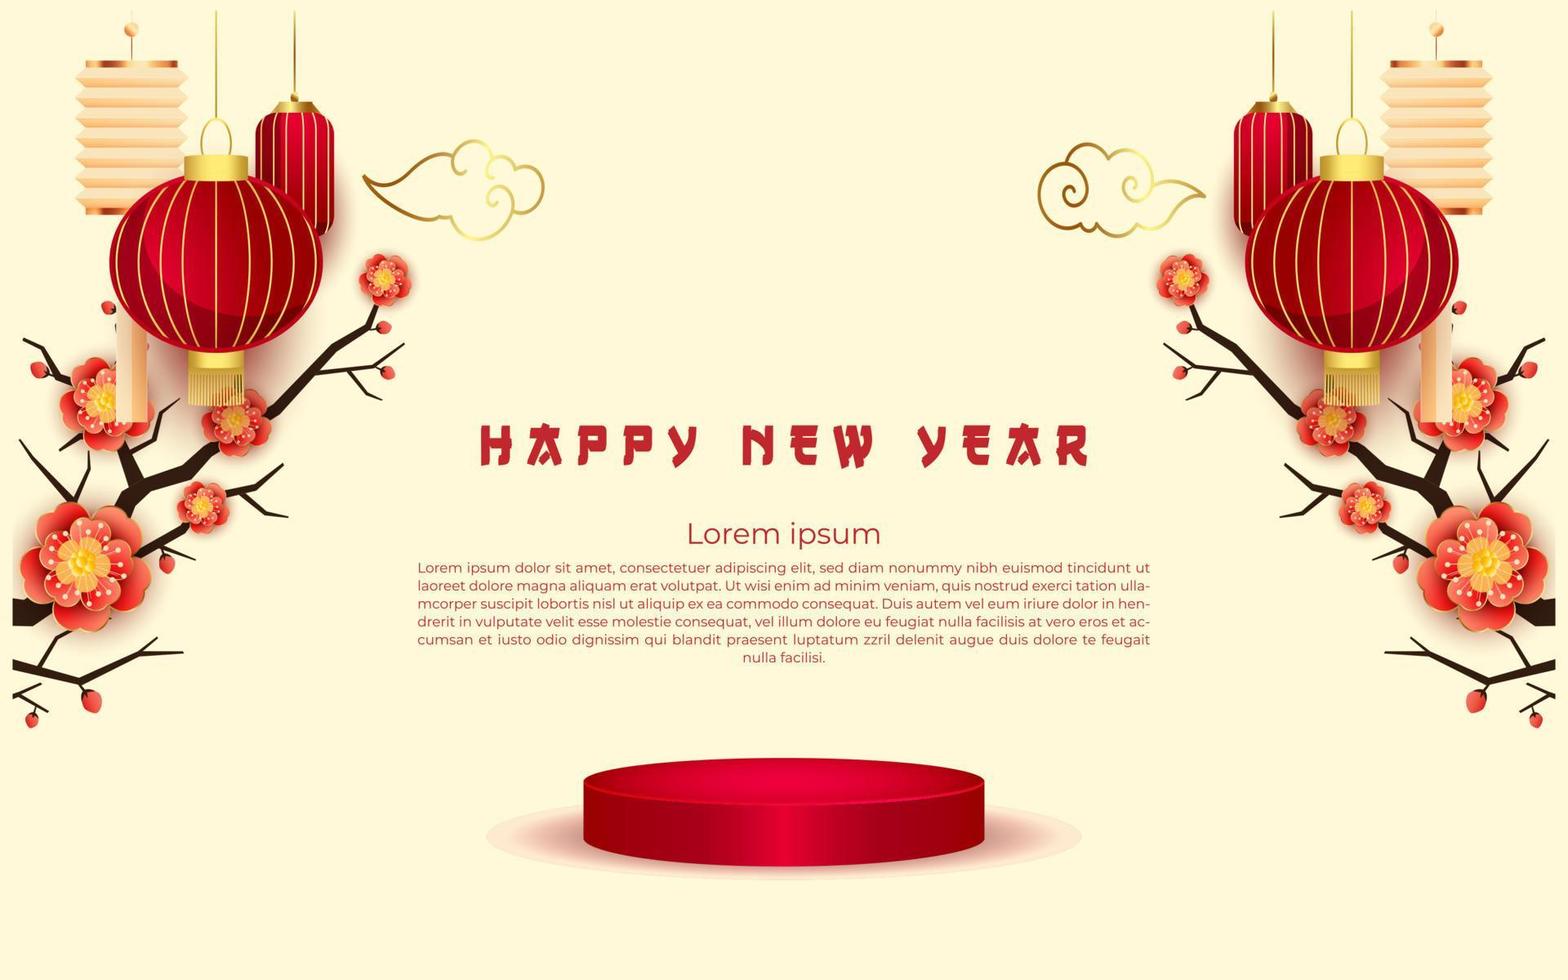 weißes chinesisches neujahr mit leerem podium mit blumenverzierungen vektor